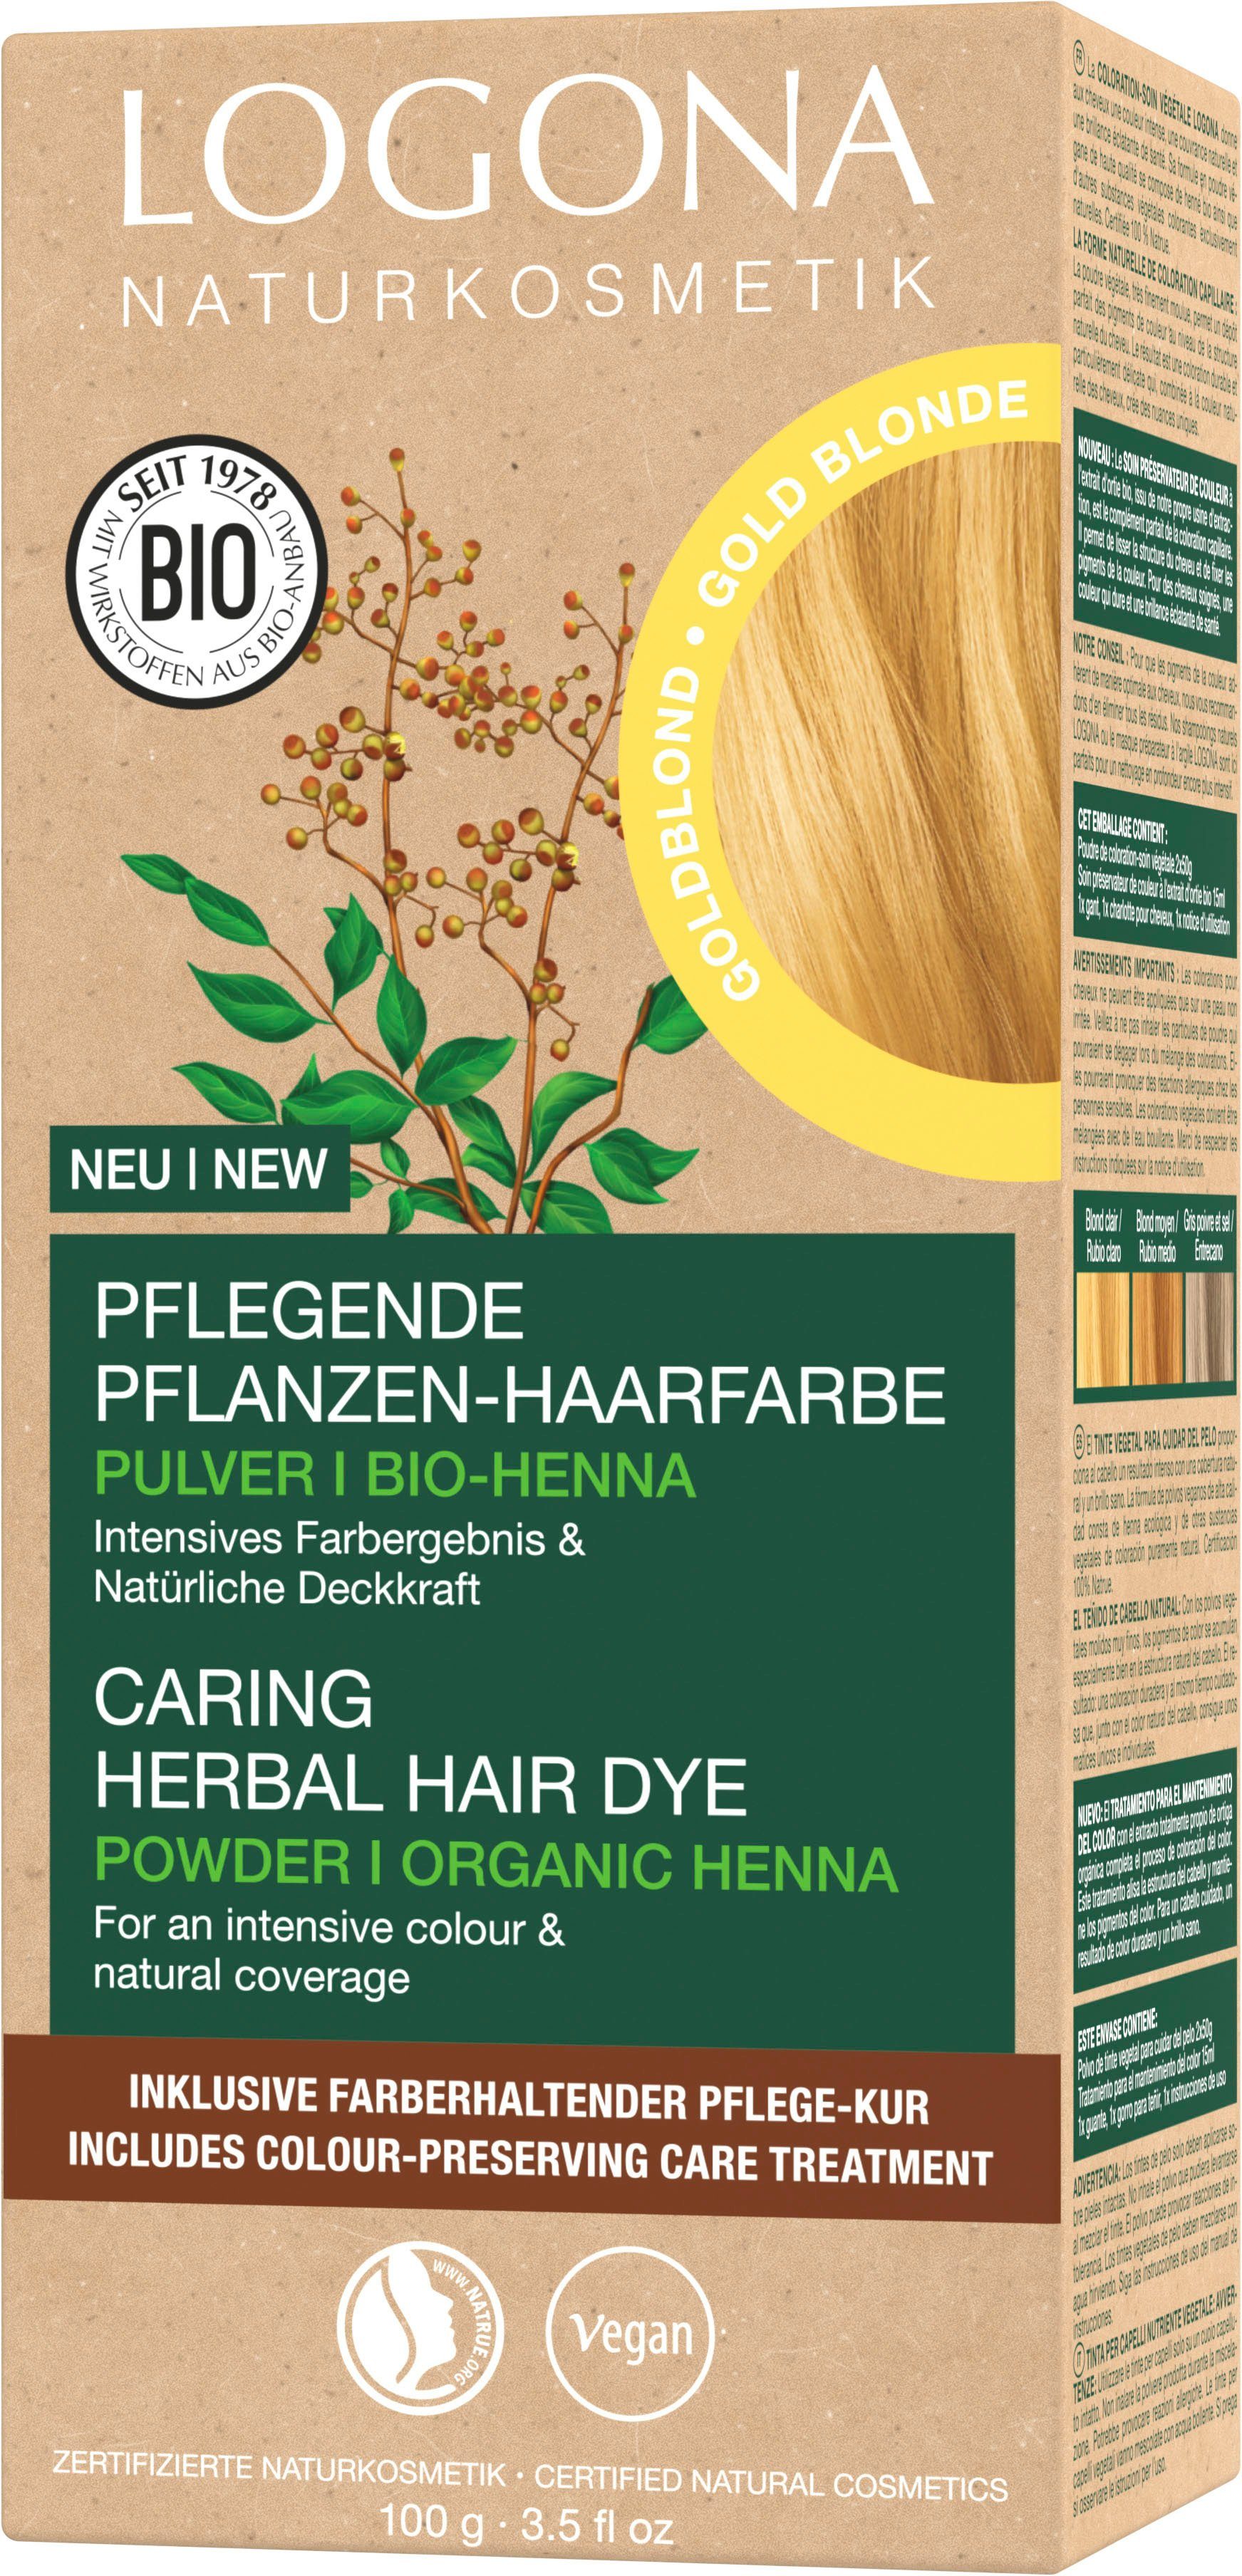 LOGONA Haarfarbe Pulver Goldblond 01 Pflanzen-Haarfarbe